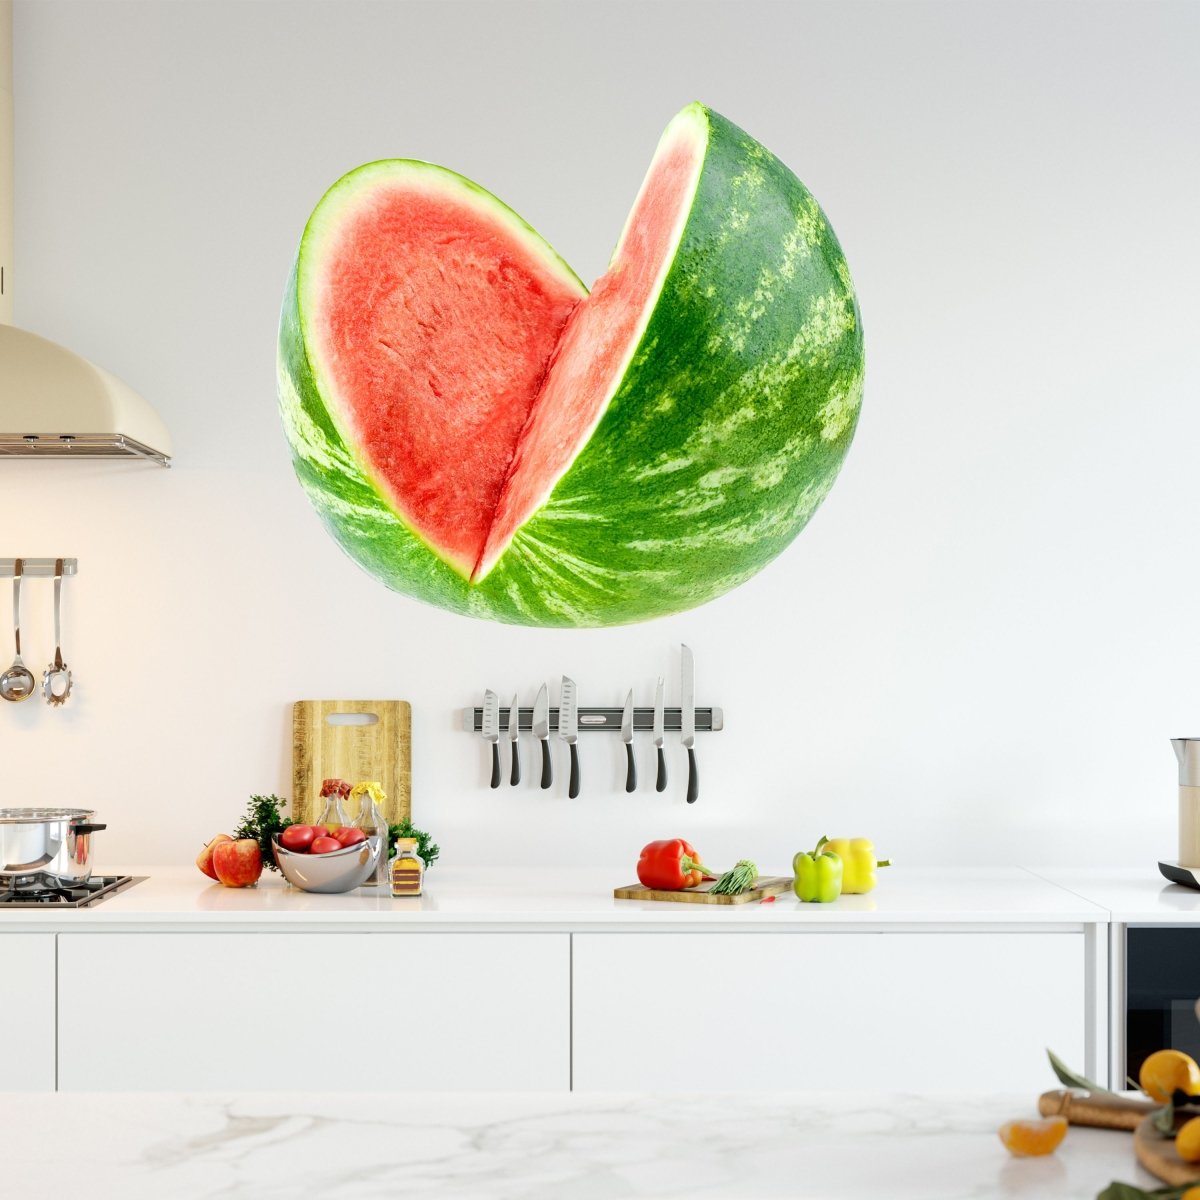 Wandsticker aufgeschnittene Wasser-melone, Obst WS00000212 - Bild 1